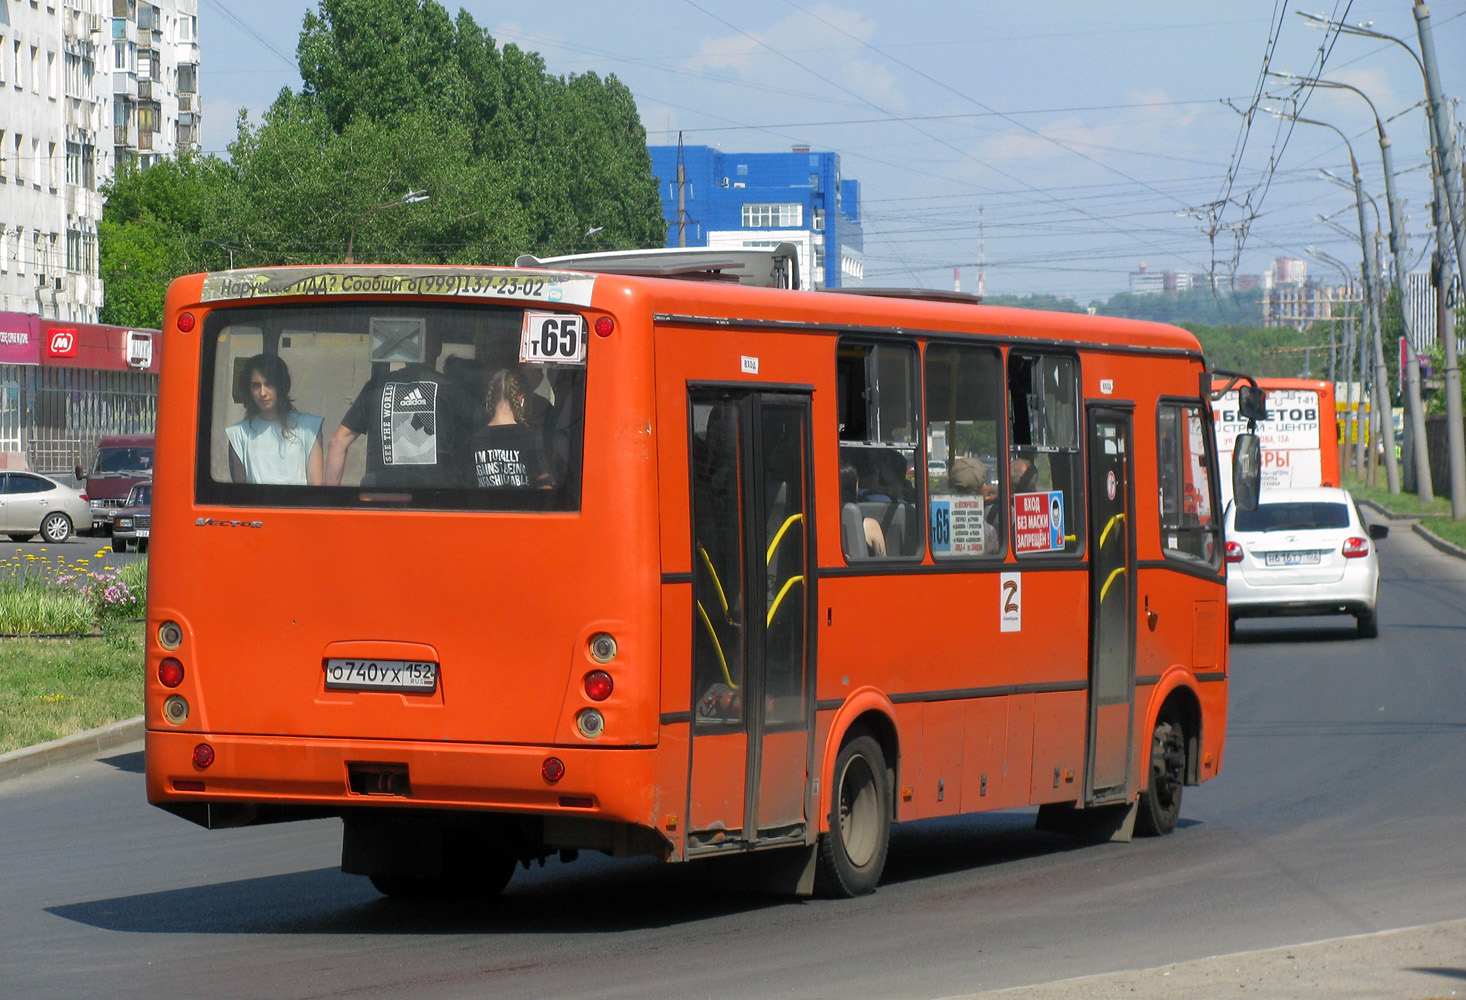 Nizhegorodskaya region, PAZ-320414-05 "Vektor" # О 740 УХ 152